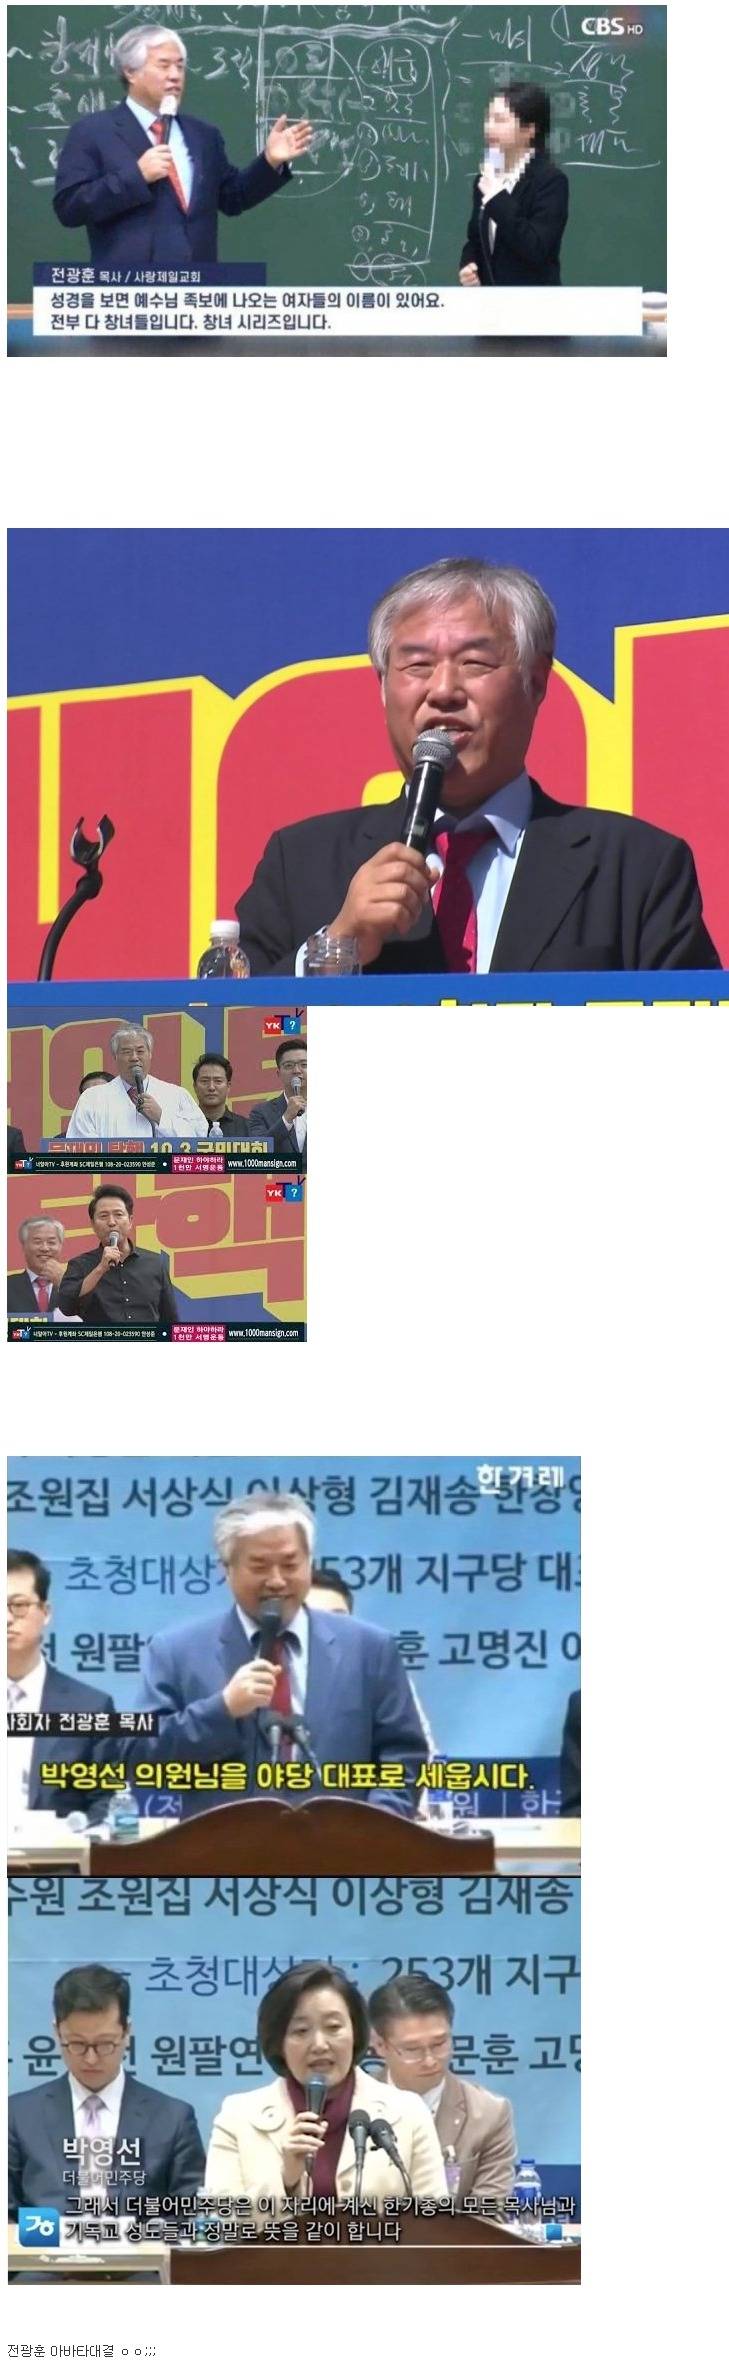 이번 서울시장 선거가 꿀잼인 이유